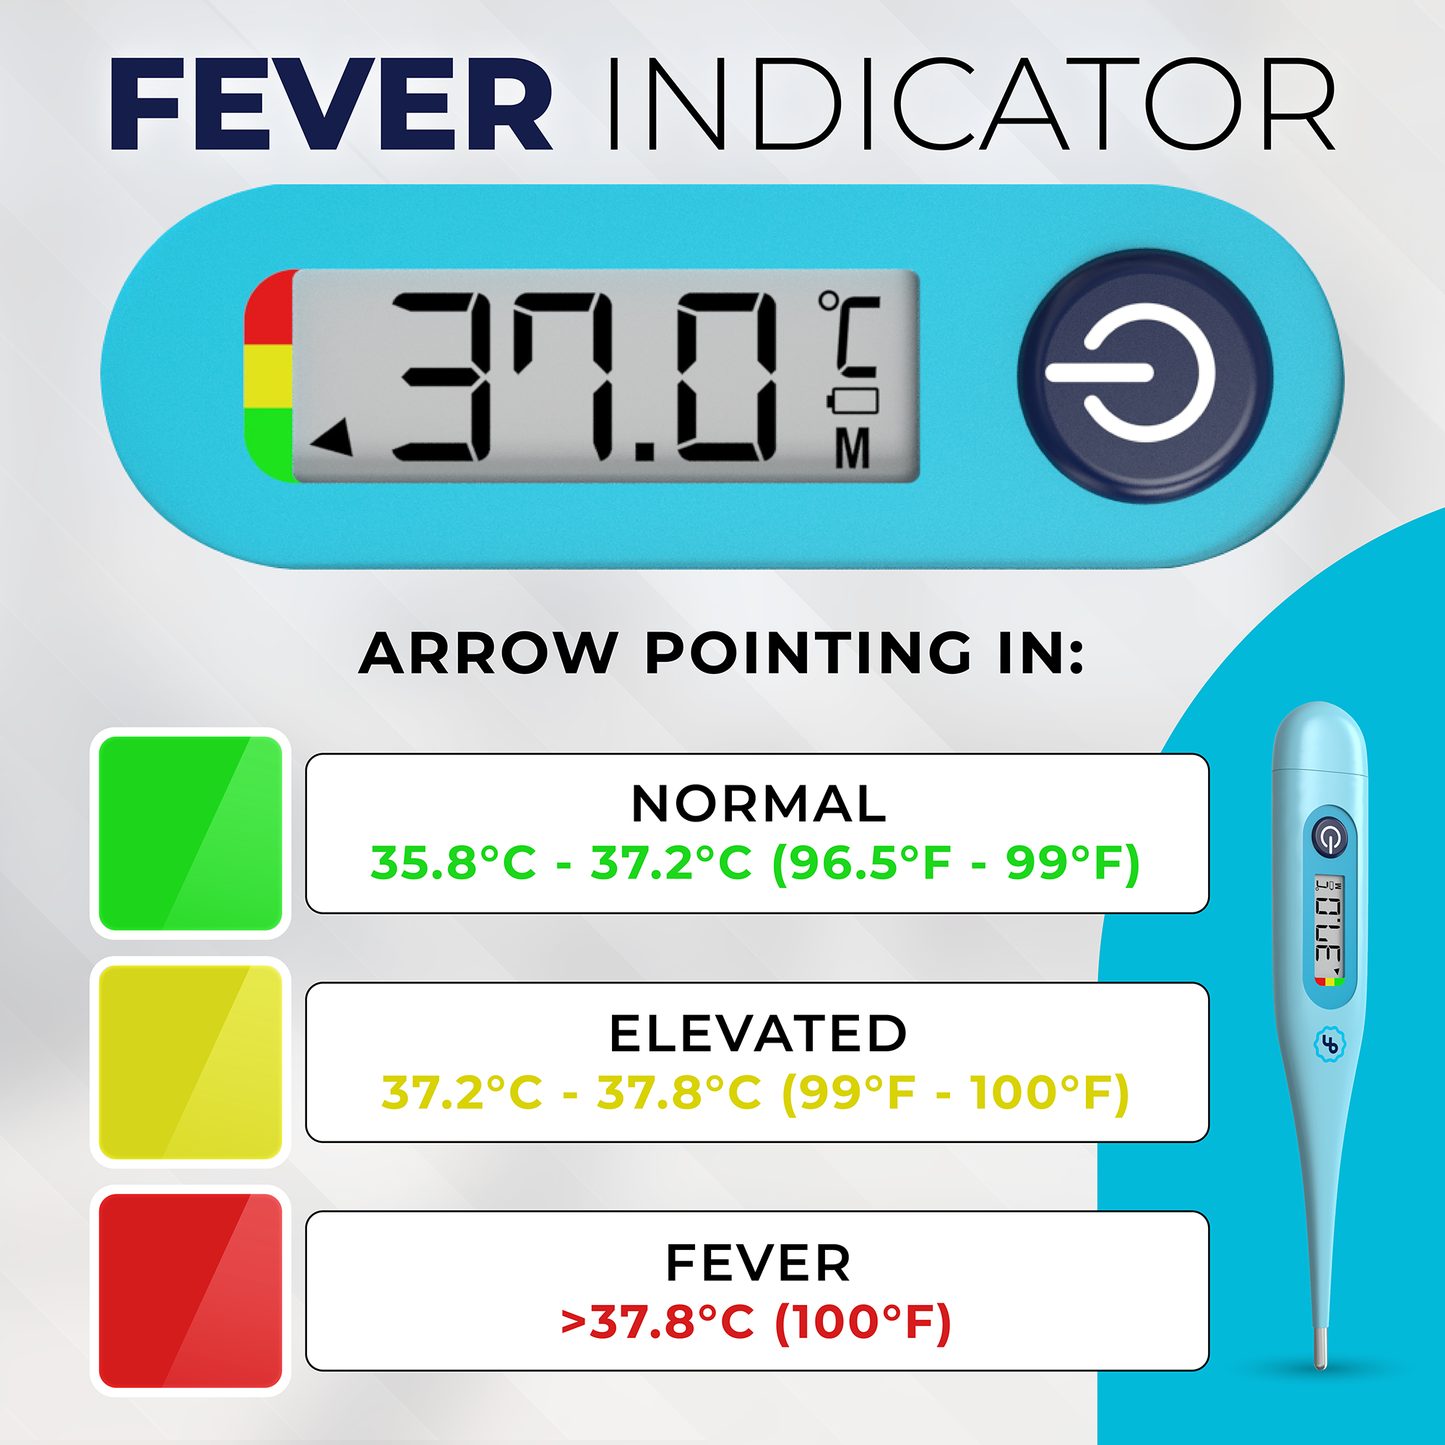 ByFloProducts Thermomètre numérique – Thermomètre oral, rectal et aisselles (DMT-4132 Bleu)